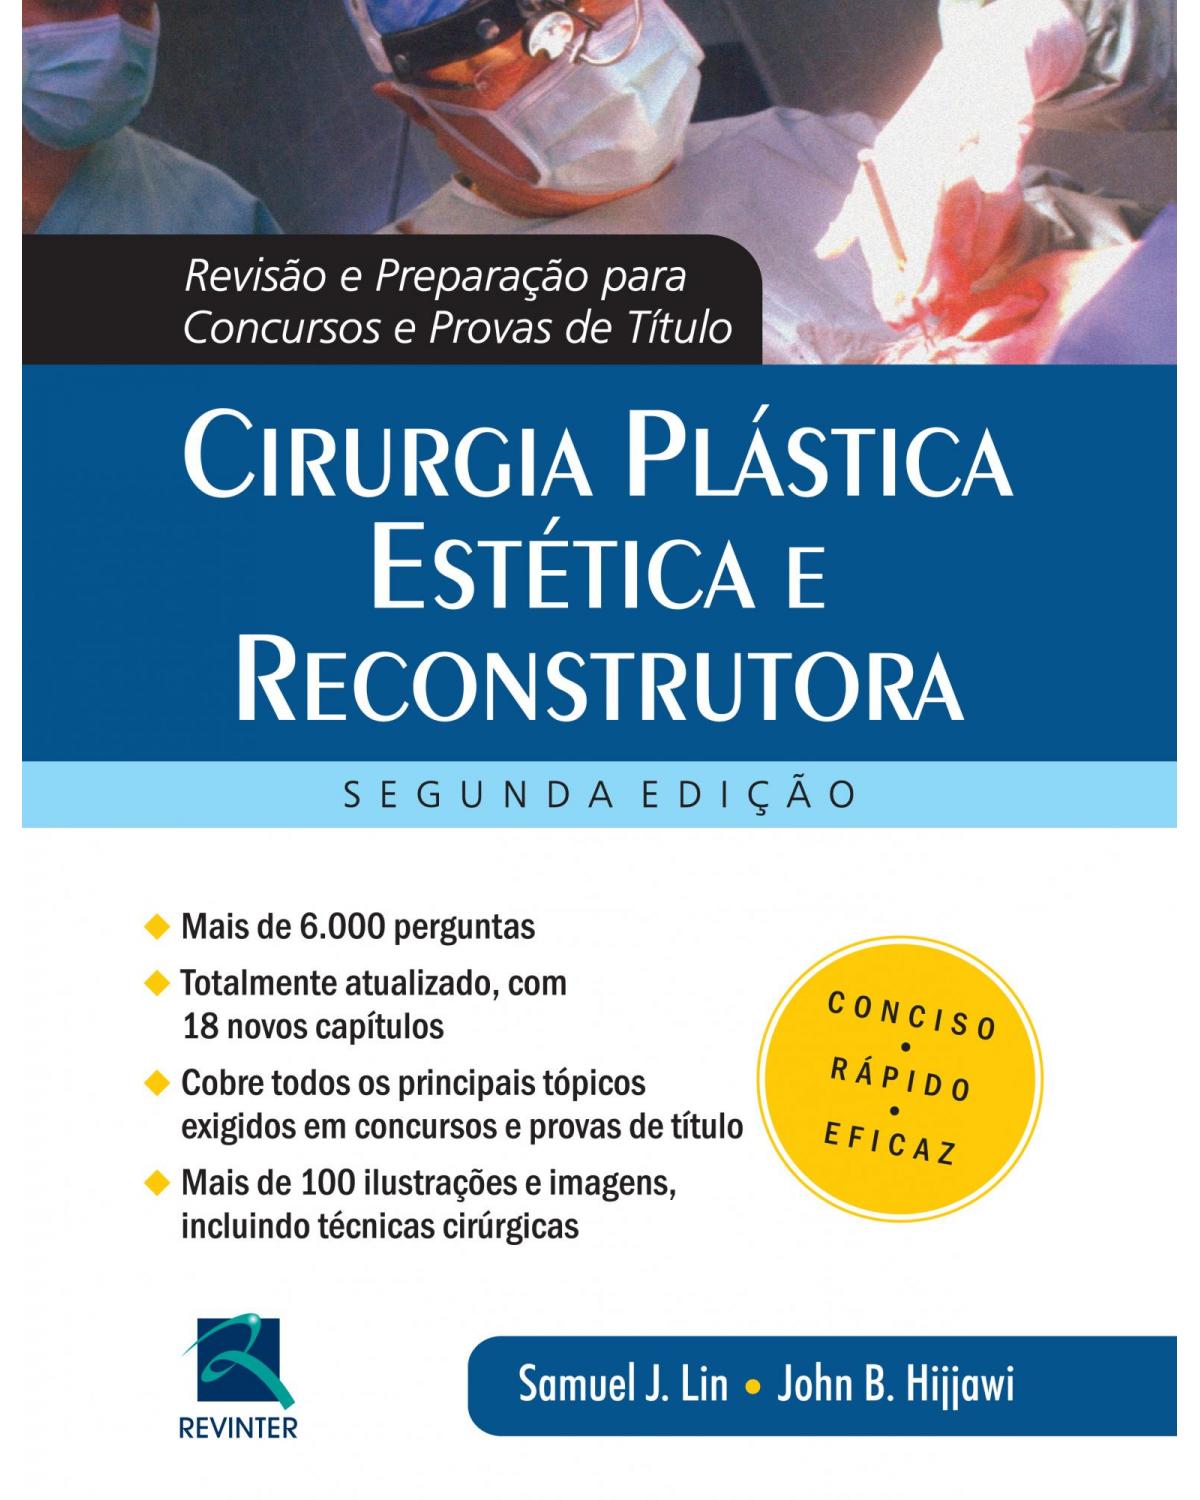 Cirurgia plástica estética e reconstrutora - revisão e preparação para concursos e provas de título - 2ª Edição | 2015